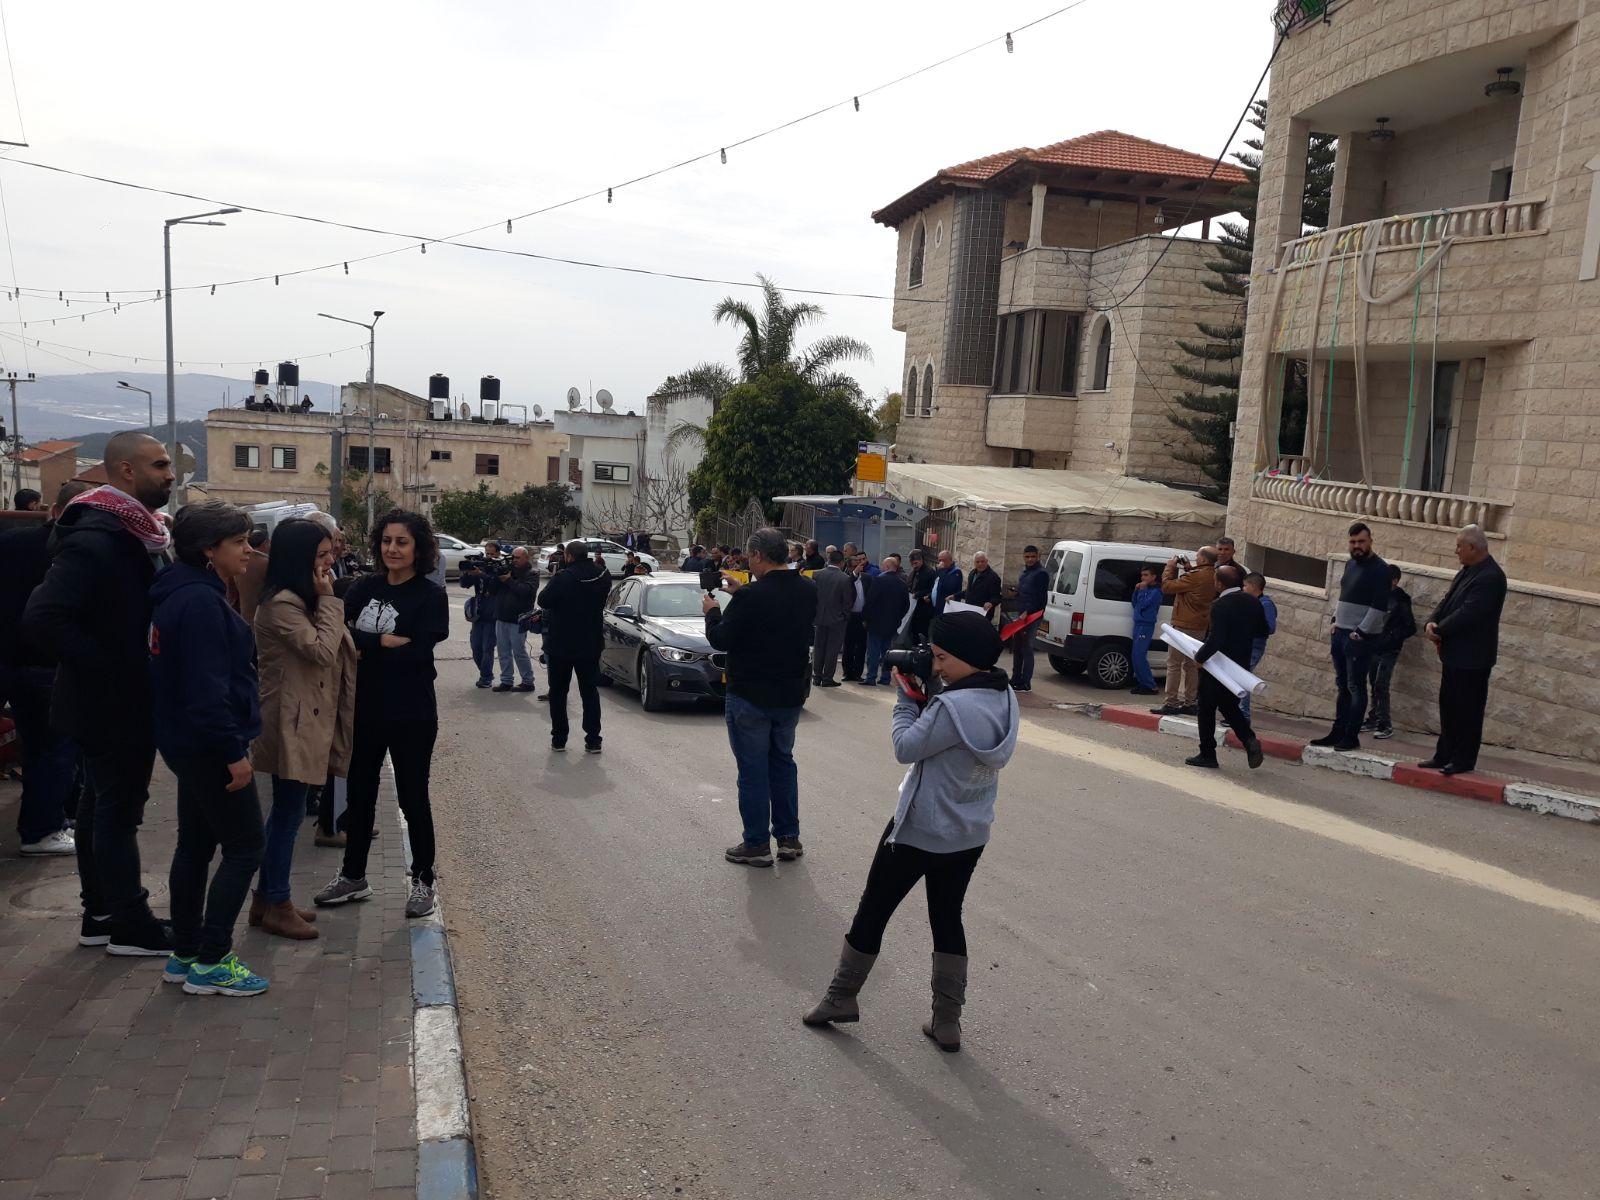  بركة: يتحتّم على فلسطينيي الداخل استقبال نتنياهو   بالصرامي على وجهه   2017122812192313